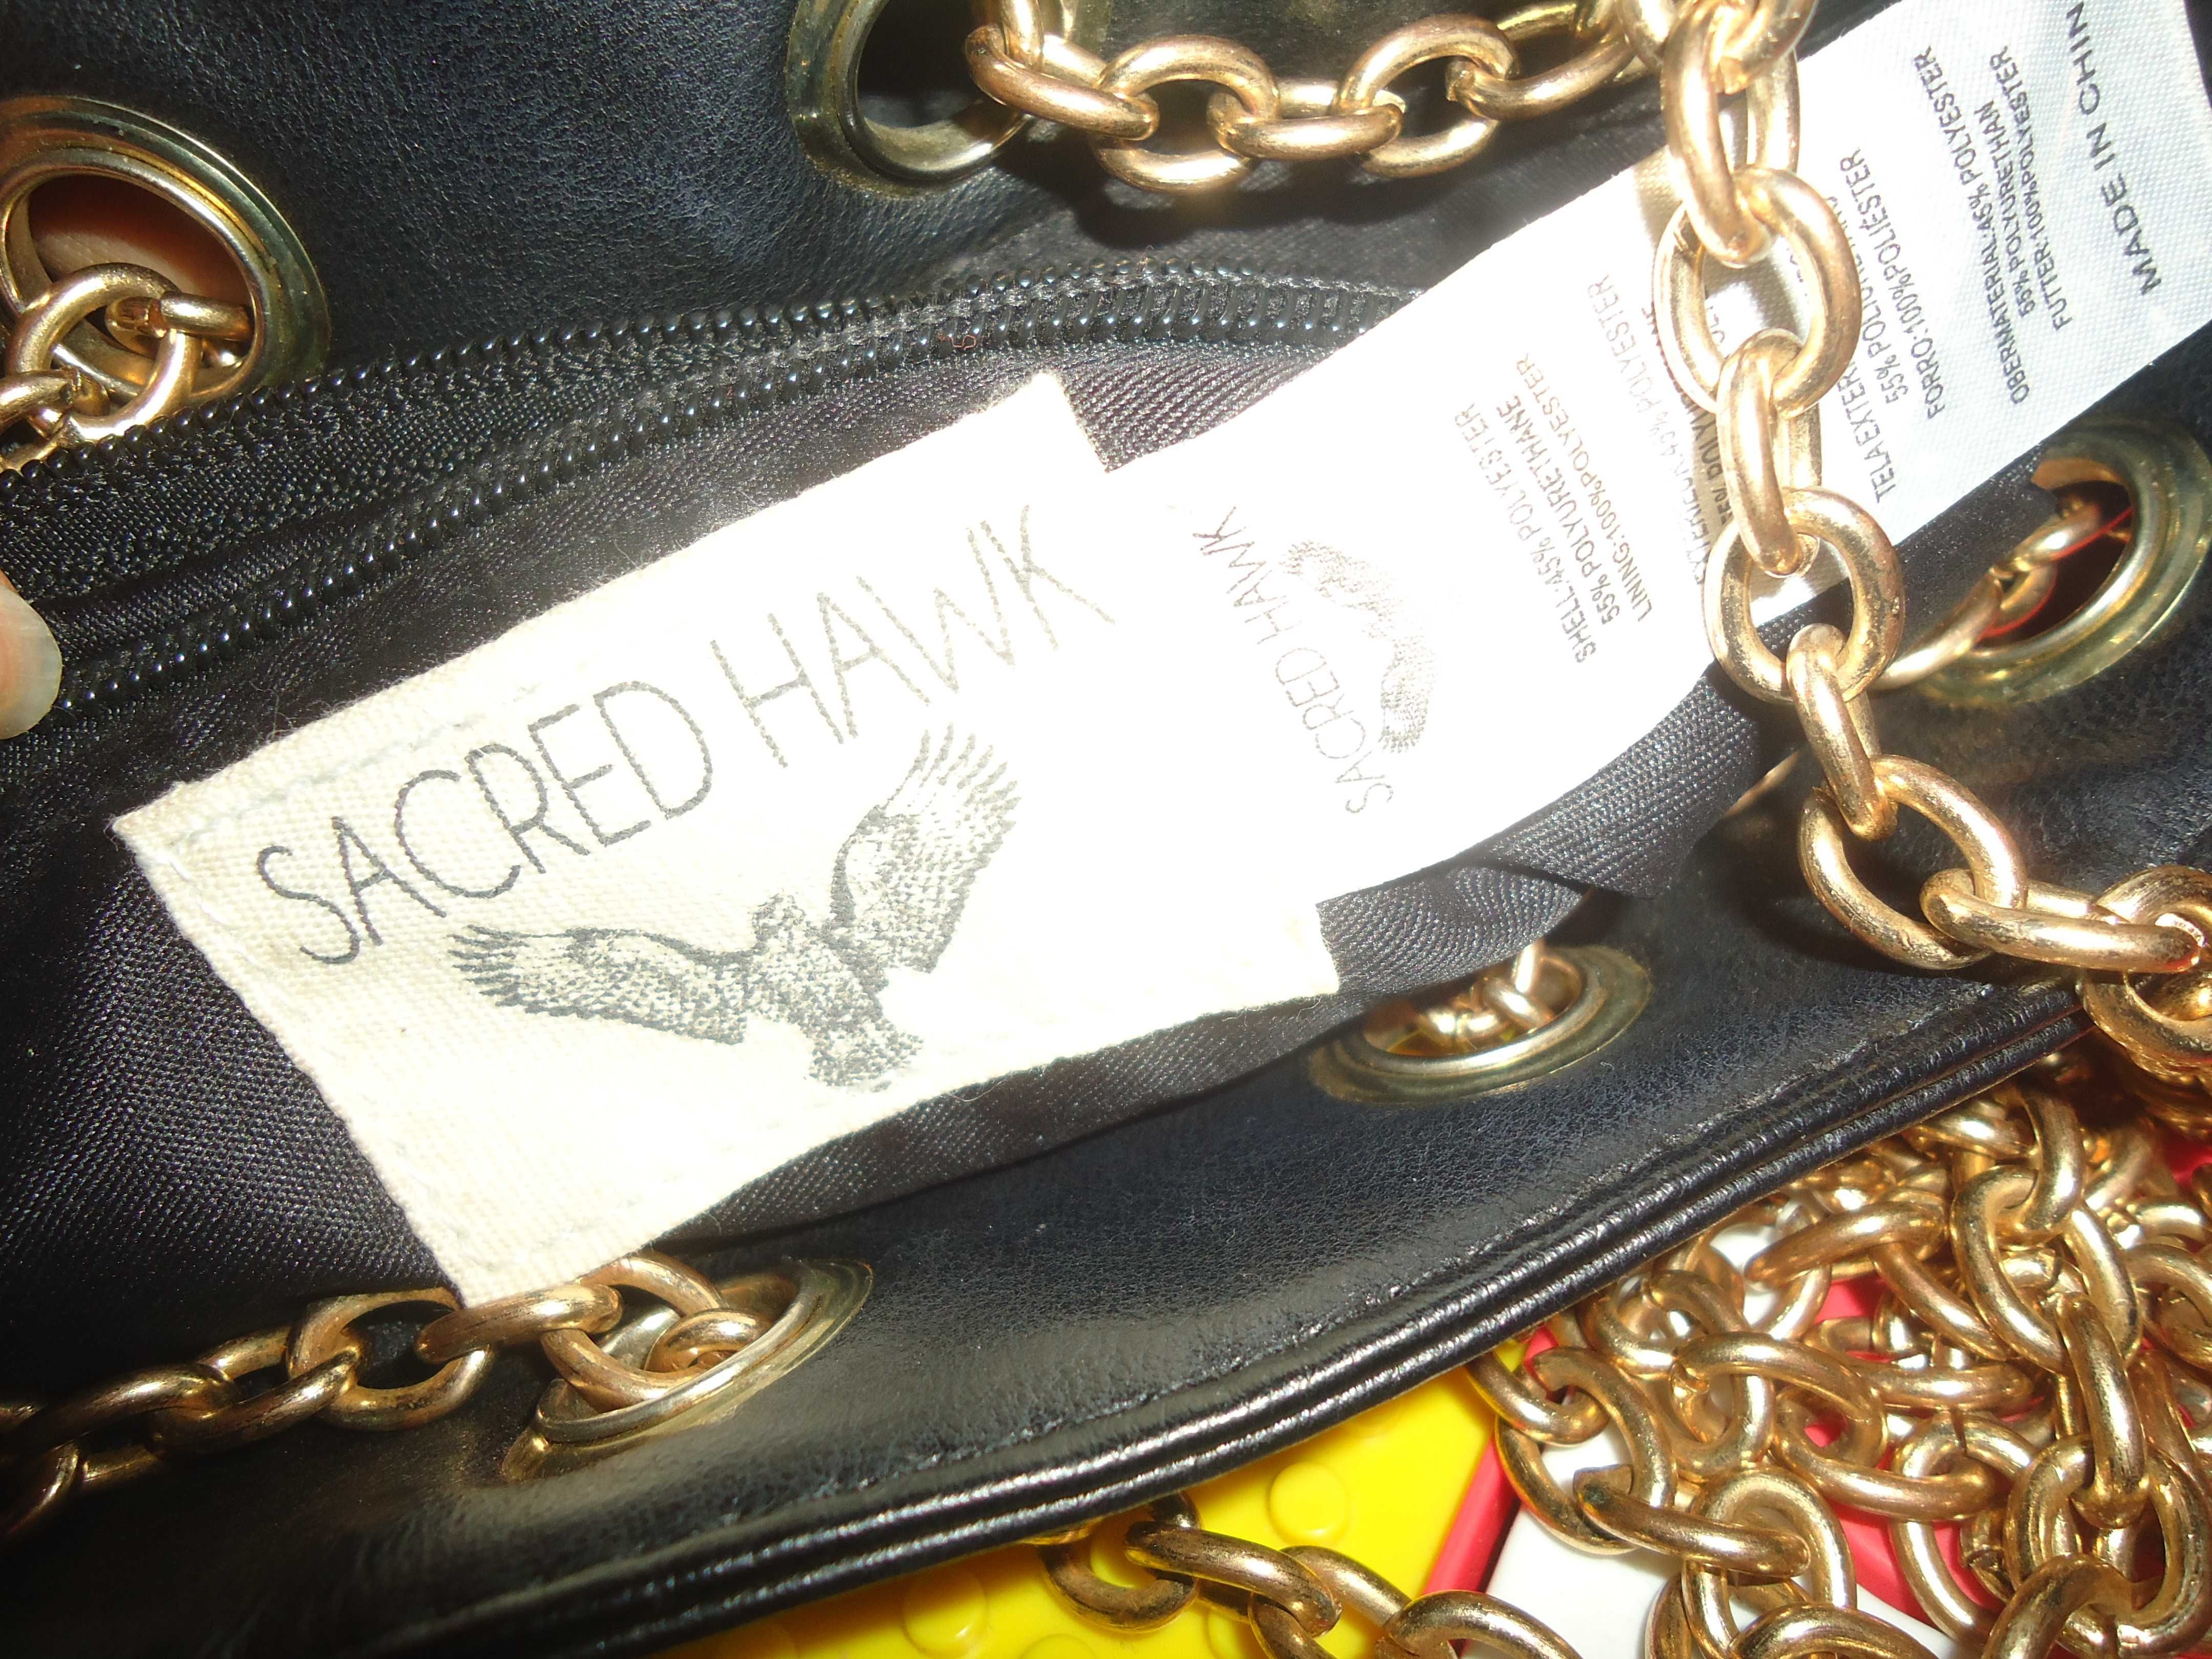 Sacred Hawk Torebka Torba typu Bucket Bag Czarna czaszka rogi barana